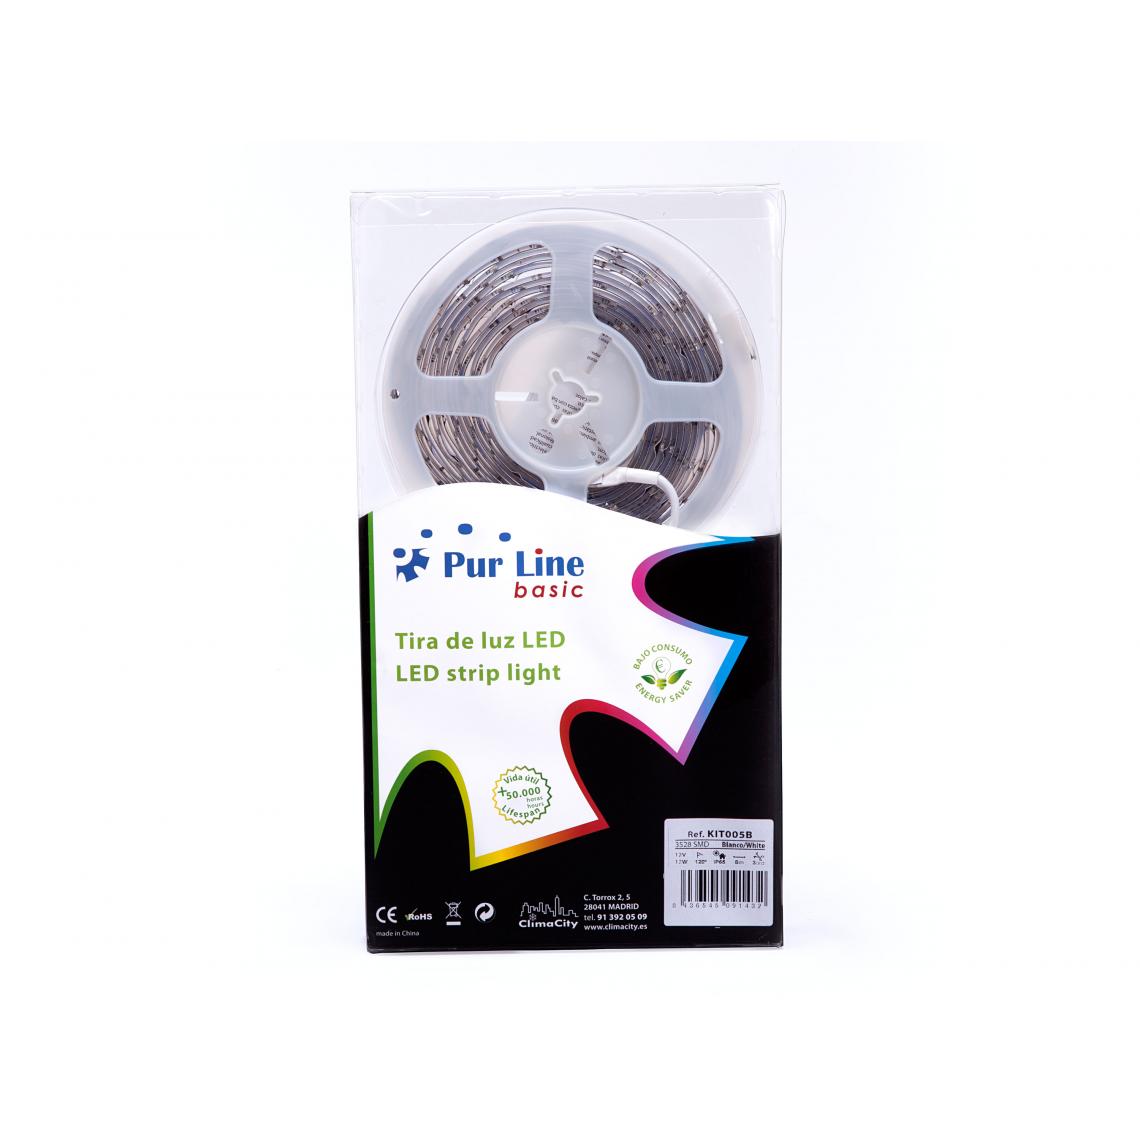 Purline - Kit de bande LED, lumière blanche froide pour extérieur et intérieur - Ruban LED